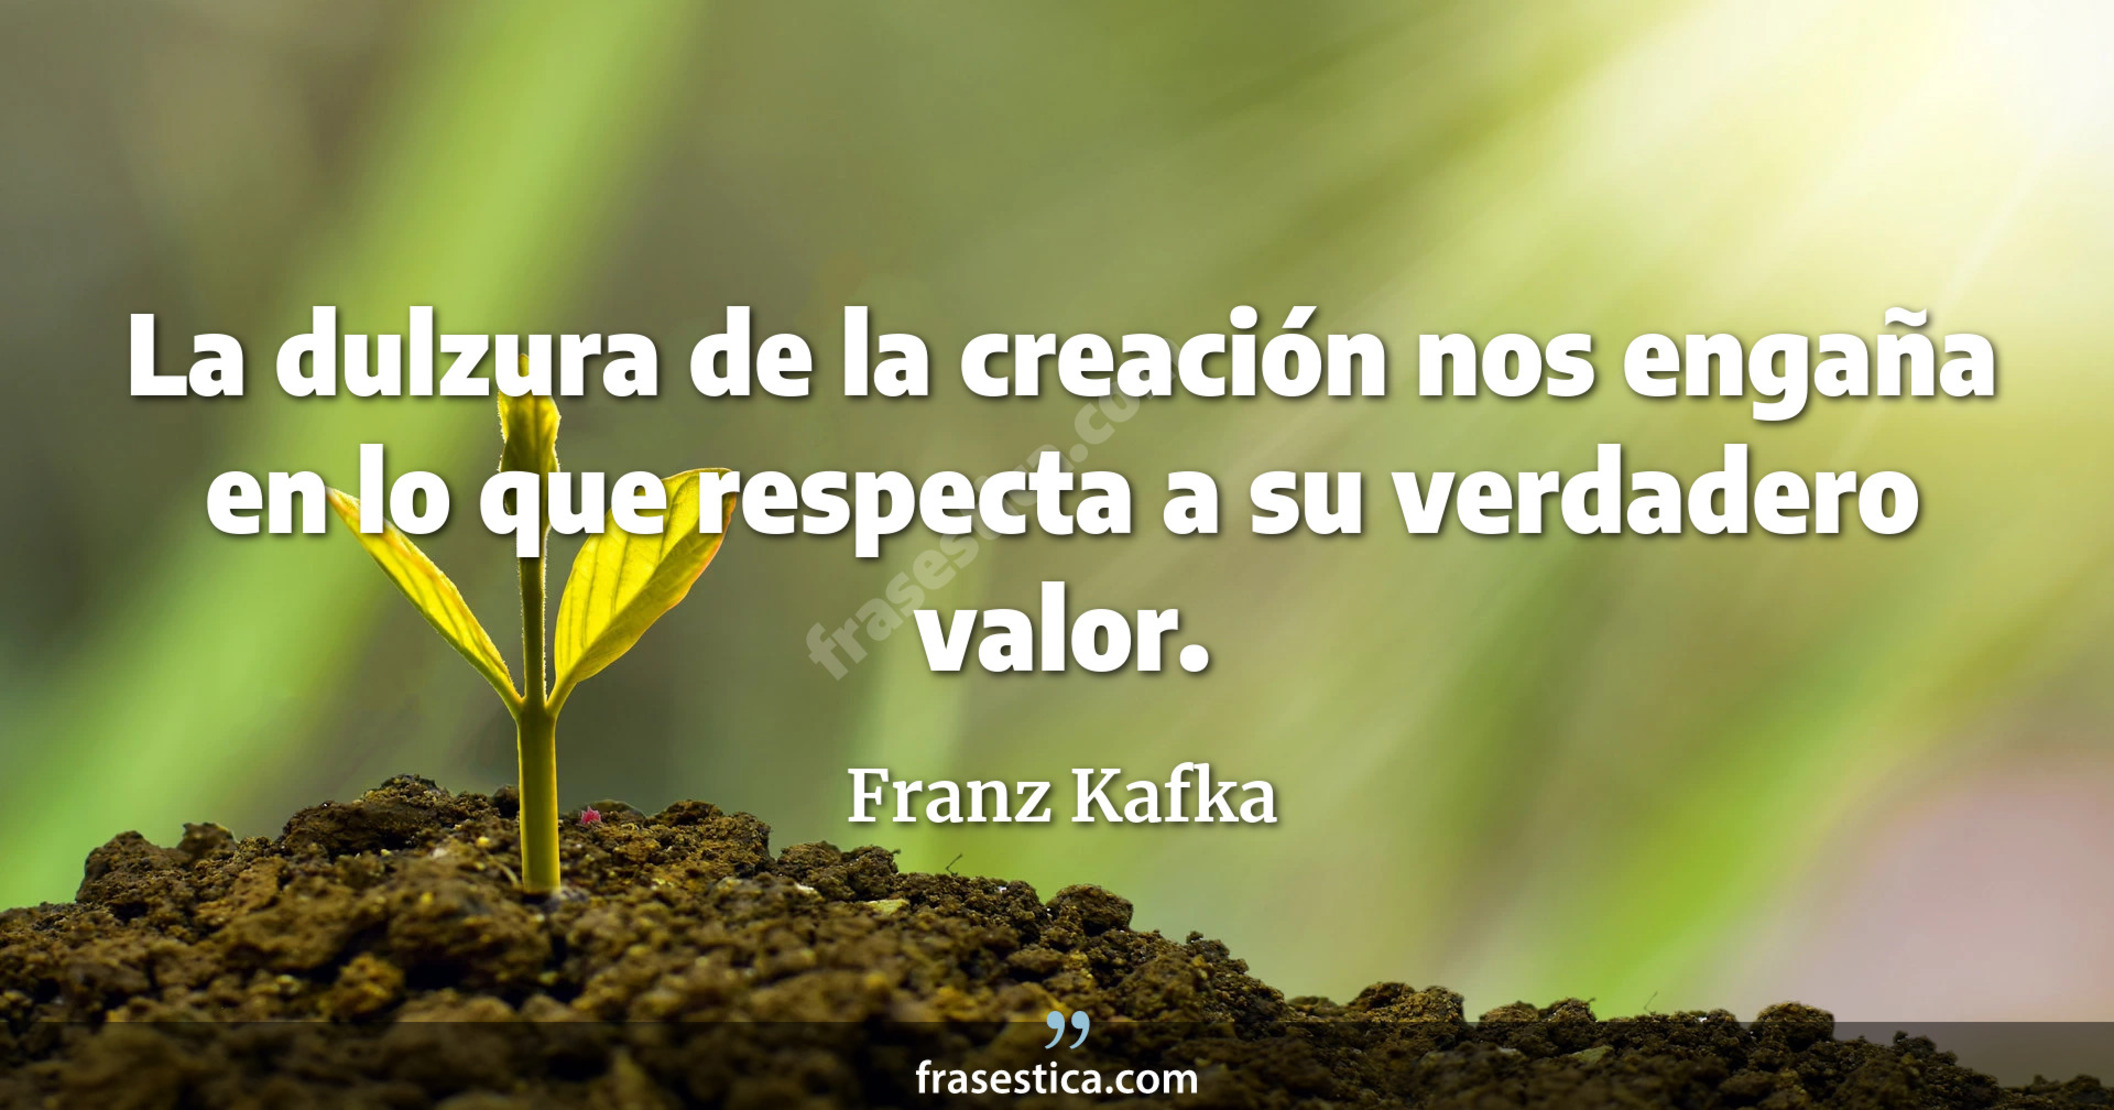 La dulzura de la creación nos engaña en lo que respecta a su verdadero valor. - Franz Kafka